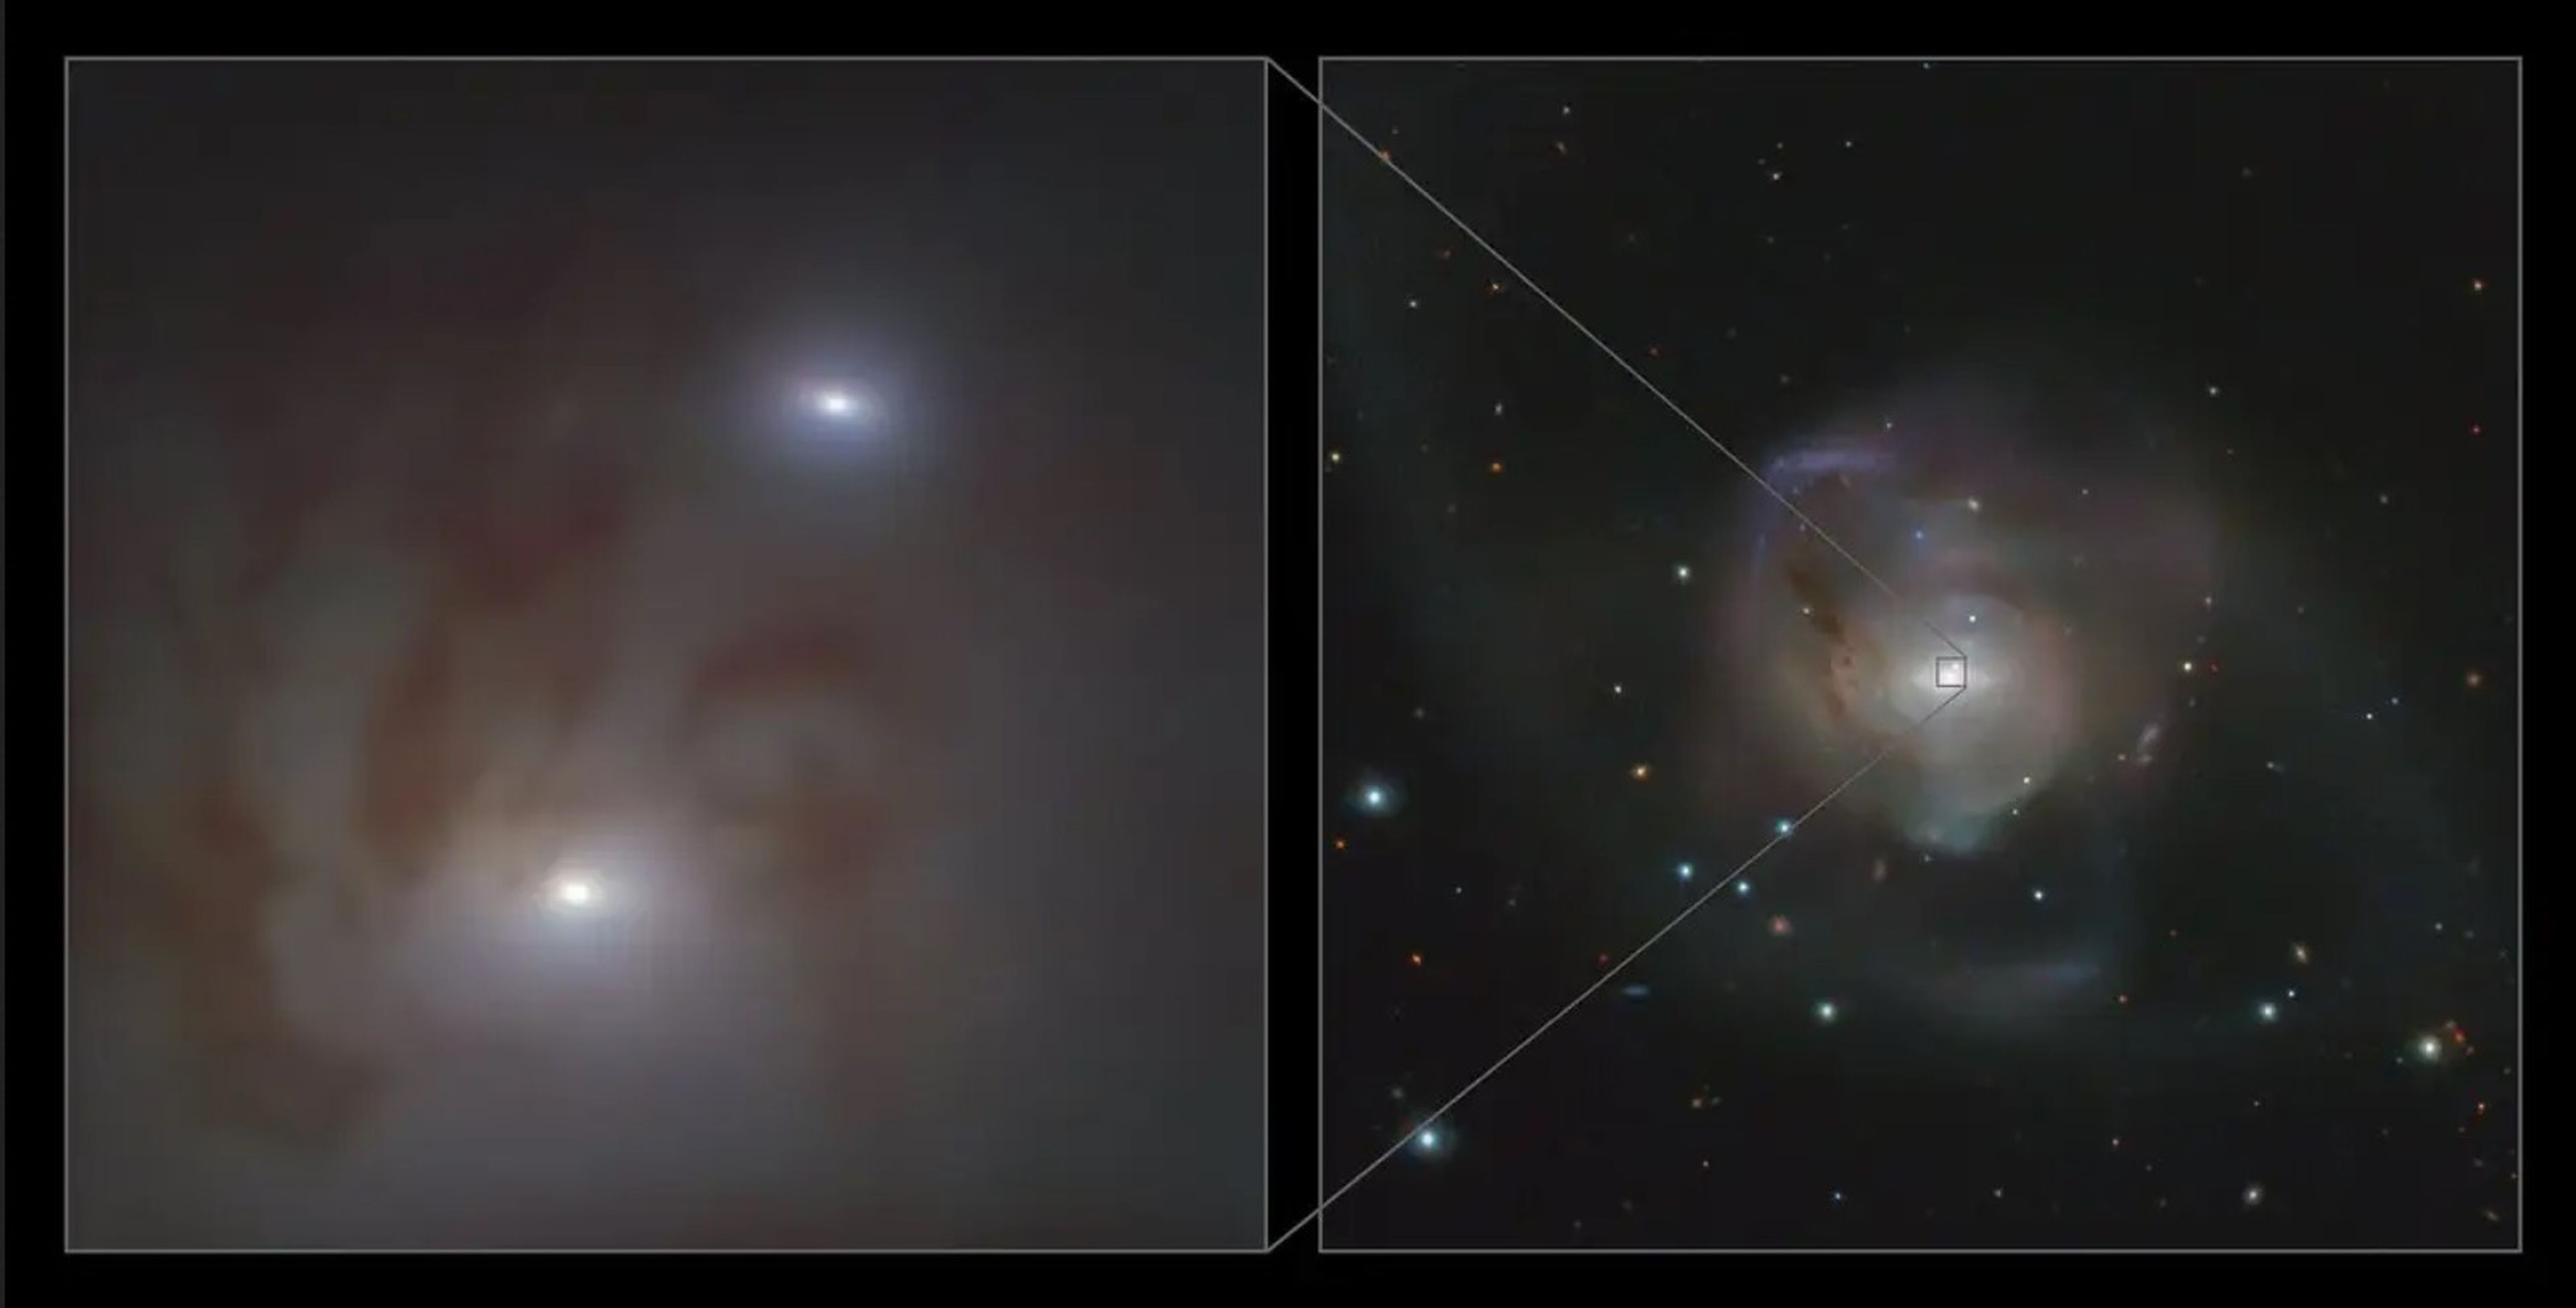 Primer plano (izquierda) y vista lejana (derecha) de los 2 núcleos galácticos brillantes, los cuales albergan un agujero negro supermasivo, en NGC 7727, una galaxia ubicada a 89 millones de años luz de la Tierra, en la constelación de Acuario.